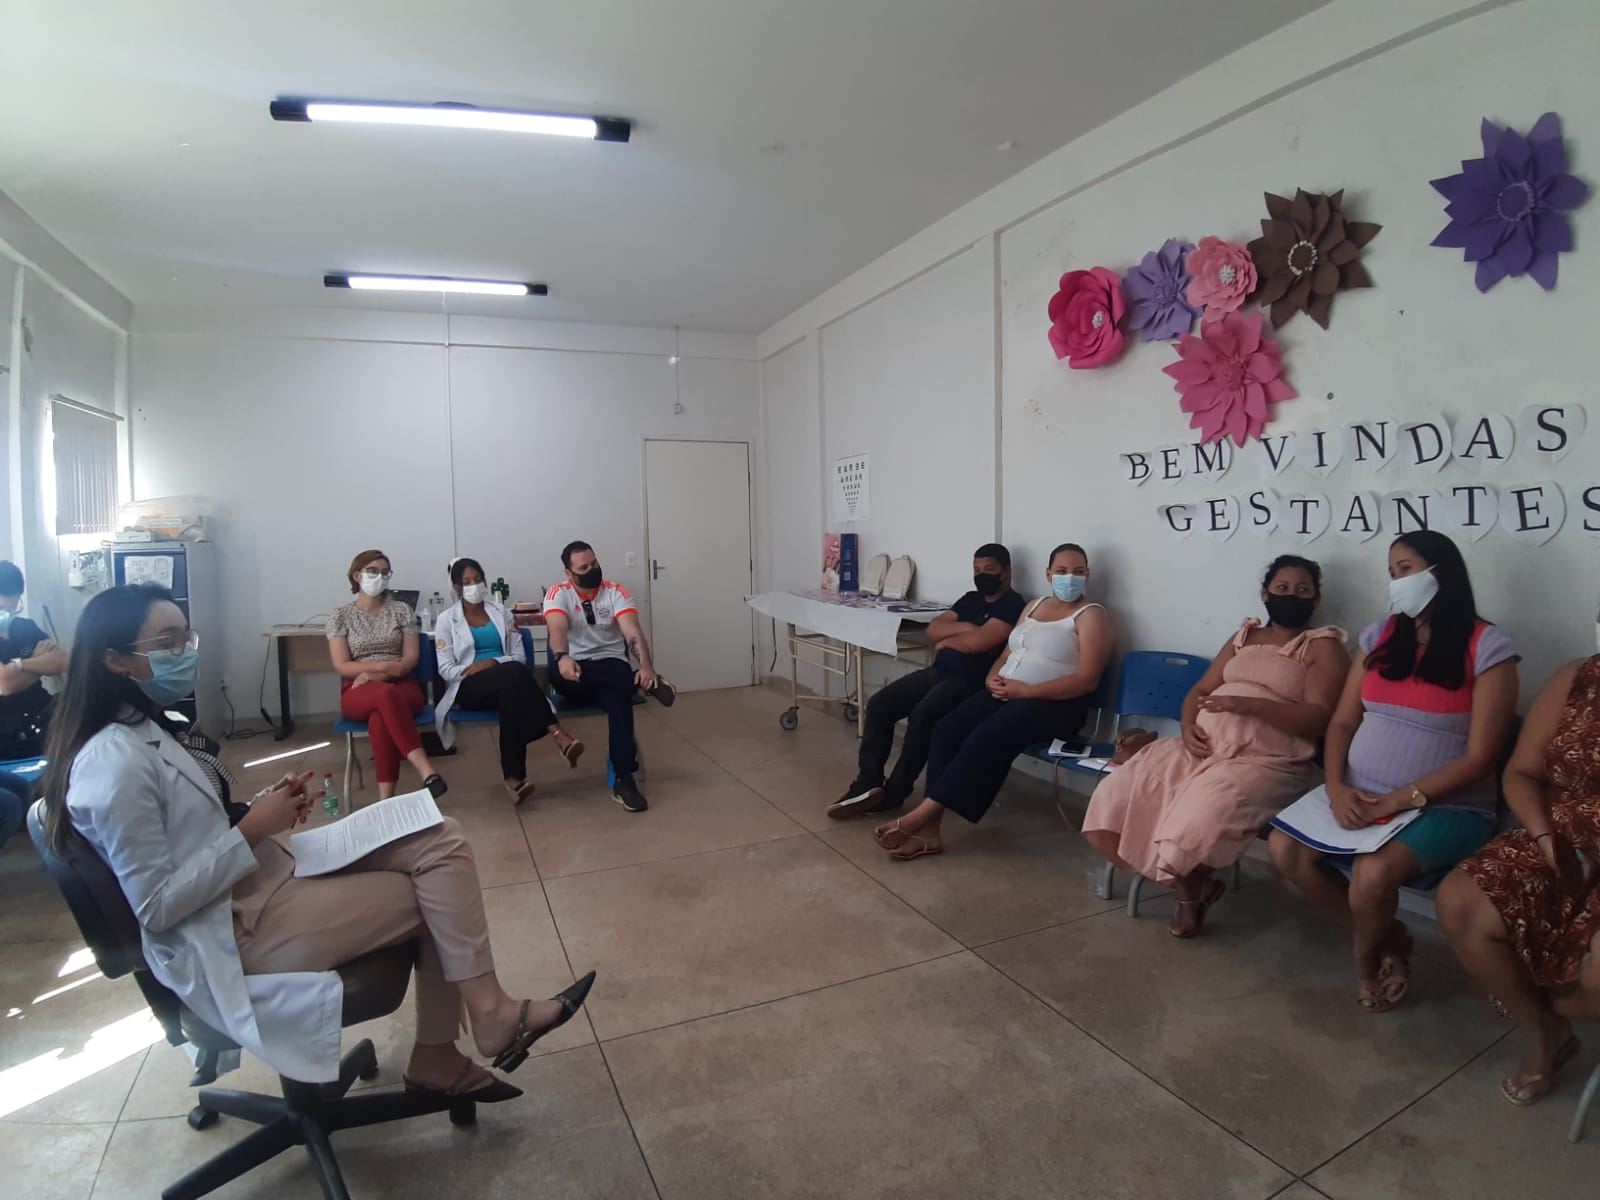 Residentes da Fesp conduzem ‘Dia D’ para gestantes e parceiros em Palmas